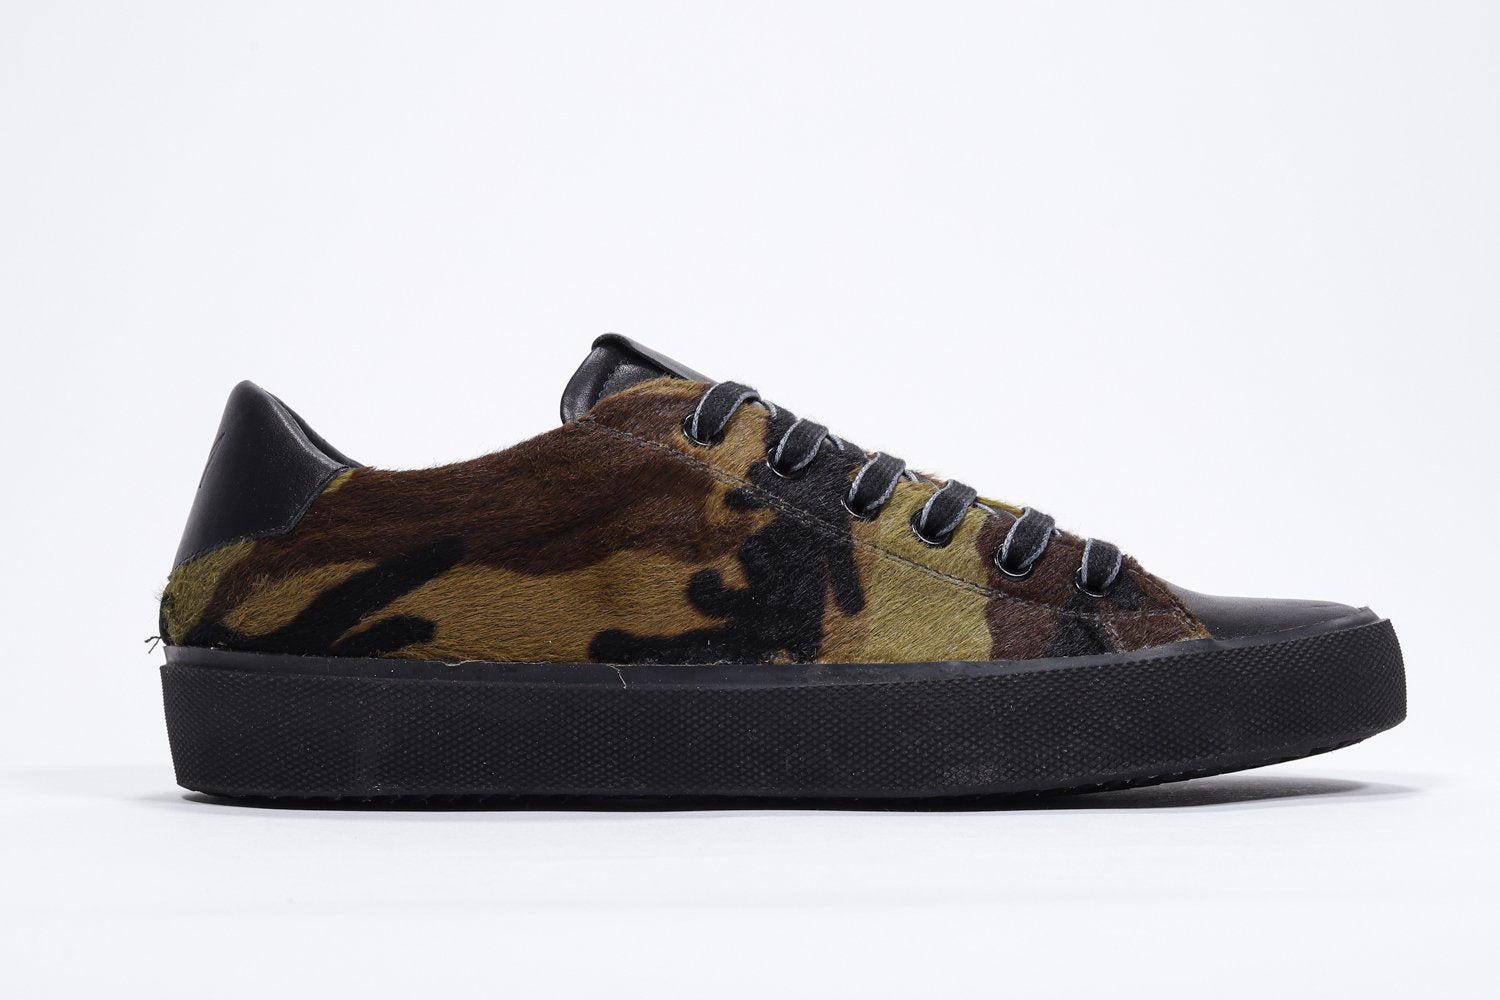 Profil latéral de la chaussure à imprimé camouflage sneaker. Tige en cuir pleine fleur et semelle en caoutchouc noir.